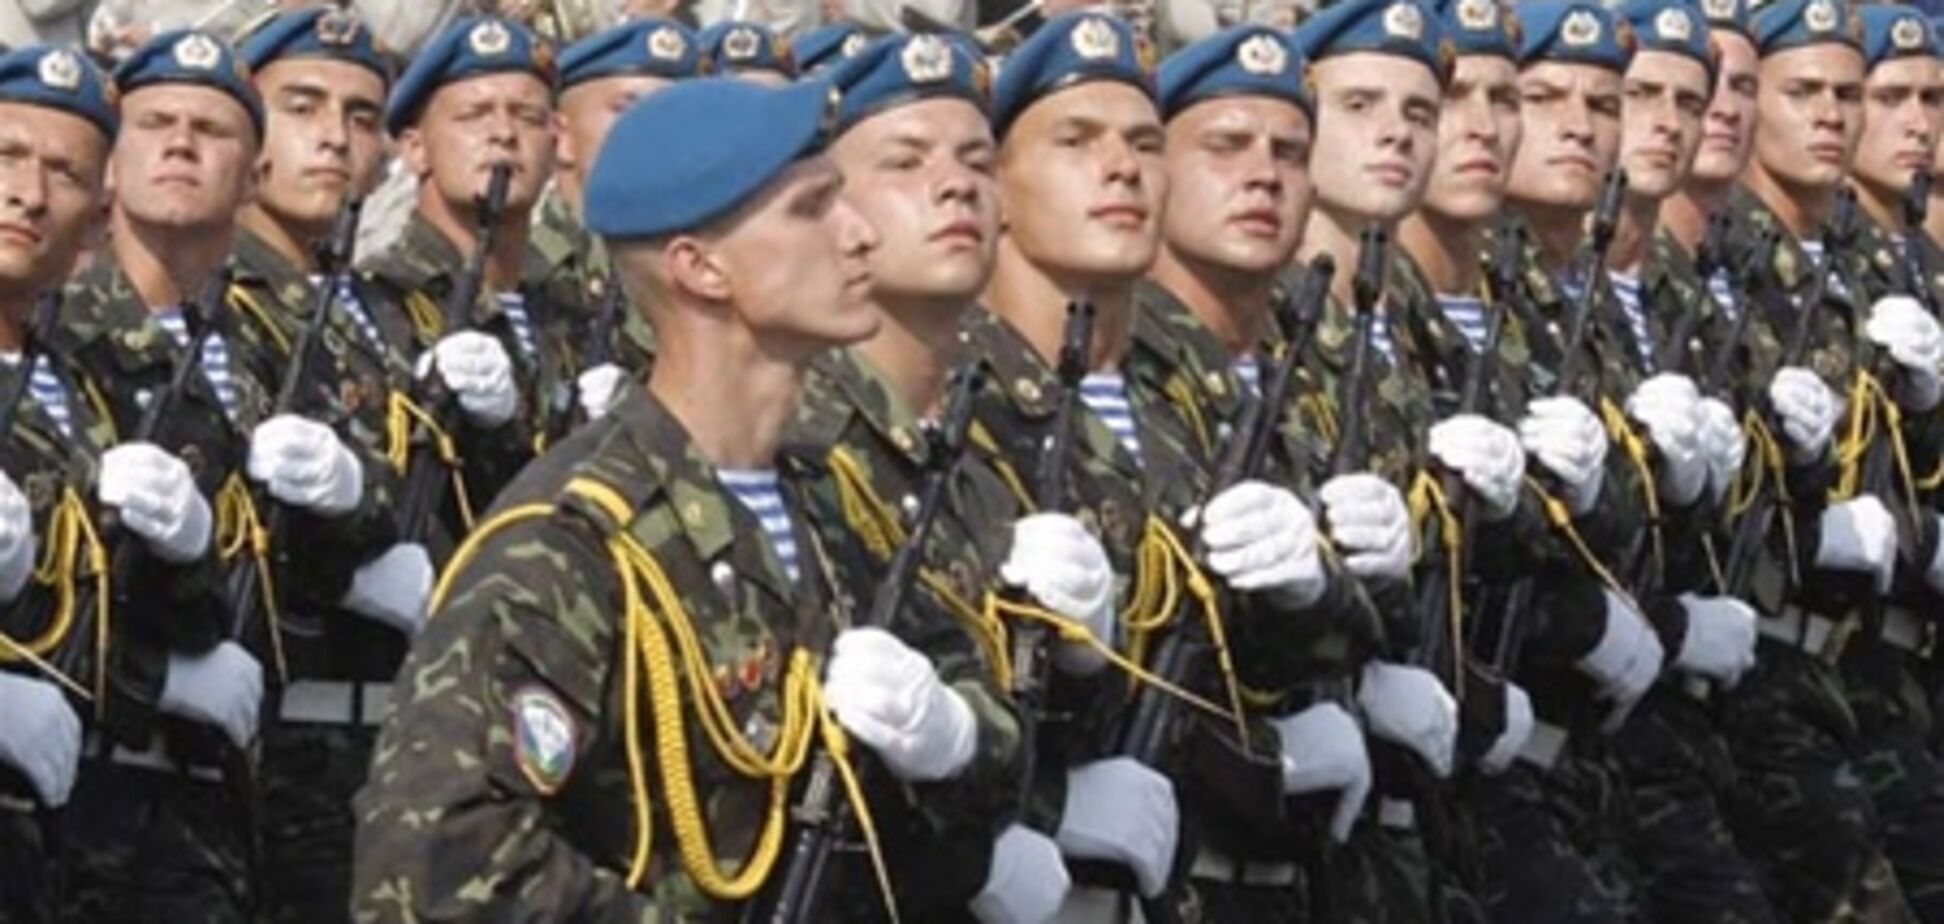 З 2014 року в Україні не буде призову до армії - начальник Генштабу